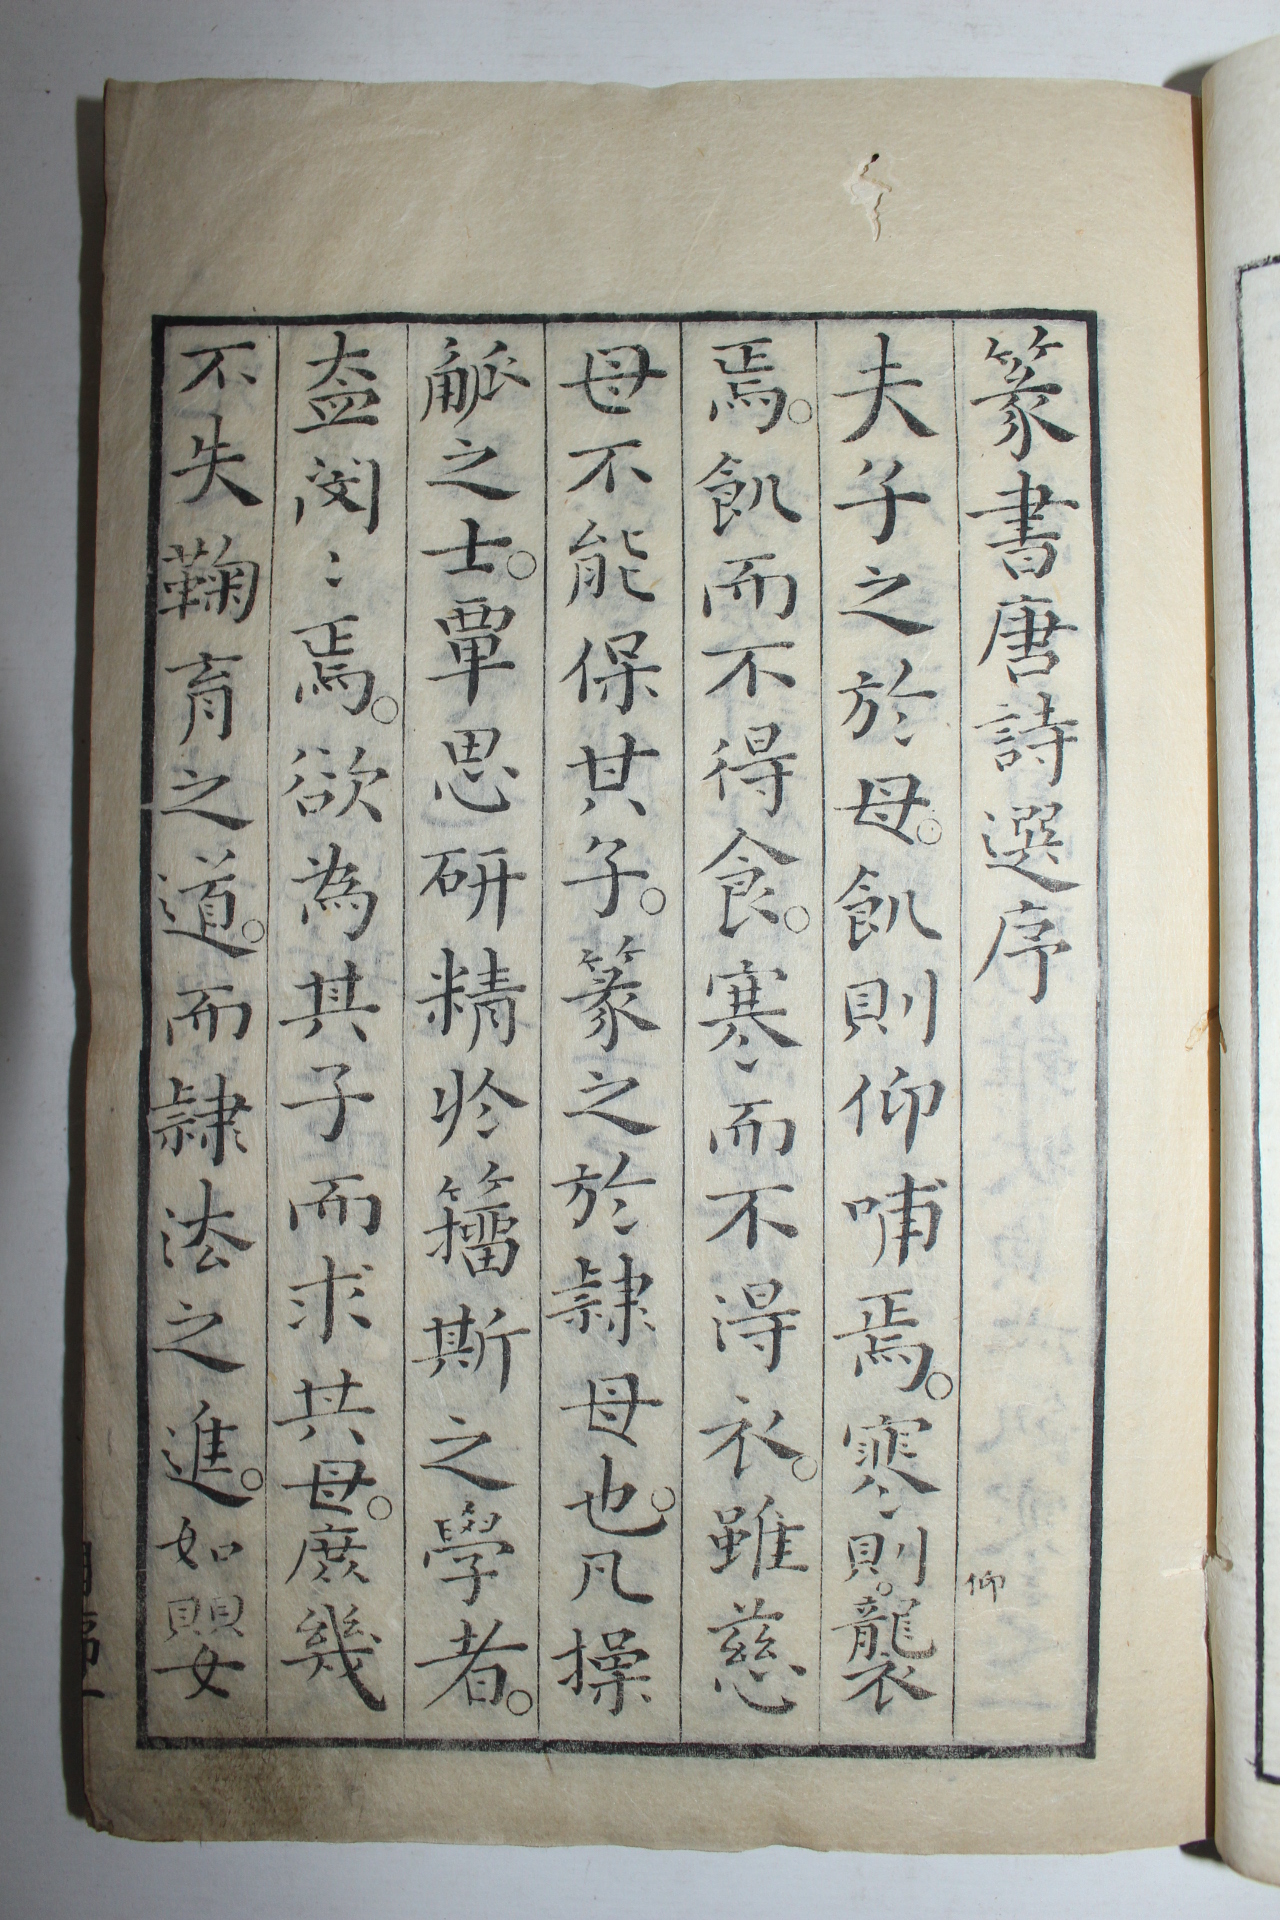 1753년(寶曆3年) 일본목판본 전서당시선오언절구(篆書唐詩選五言絶句) 1책완질